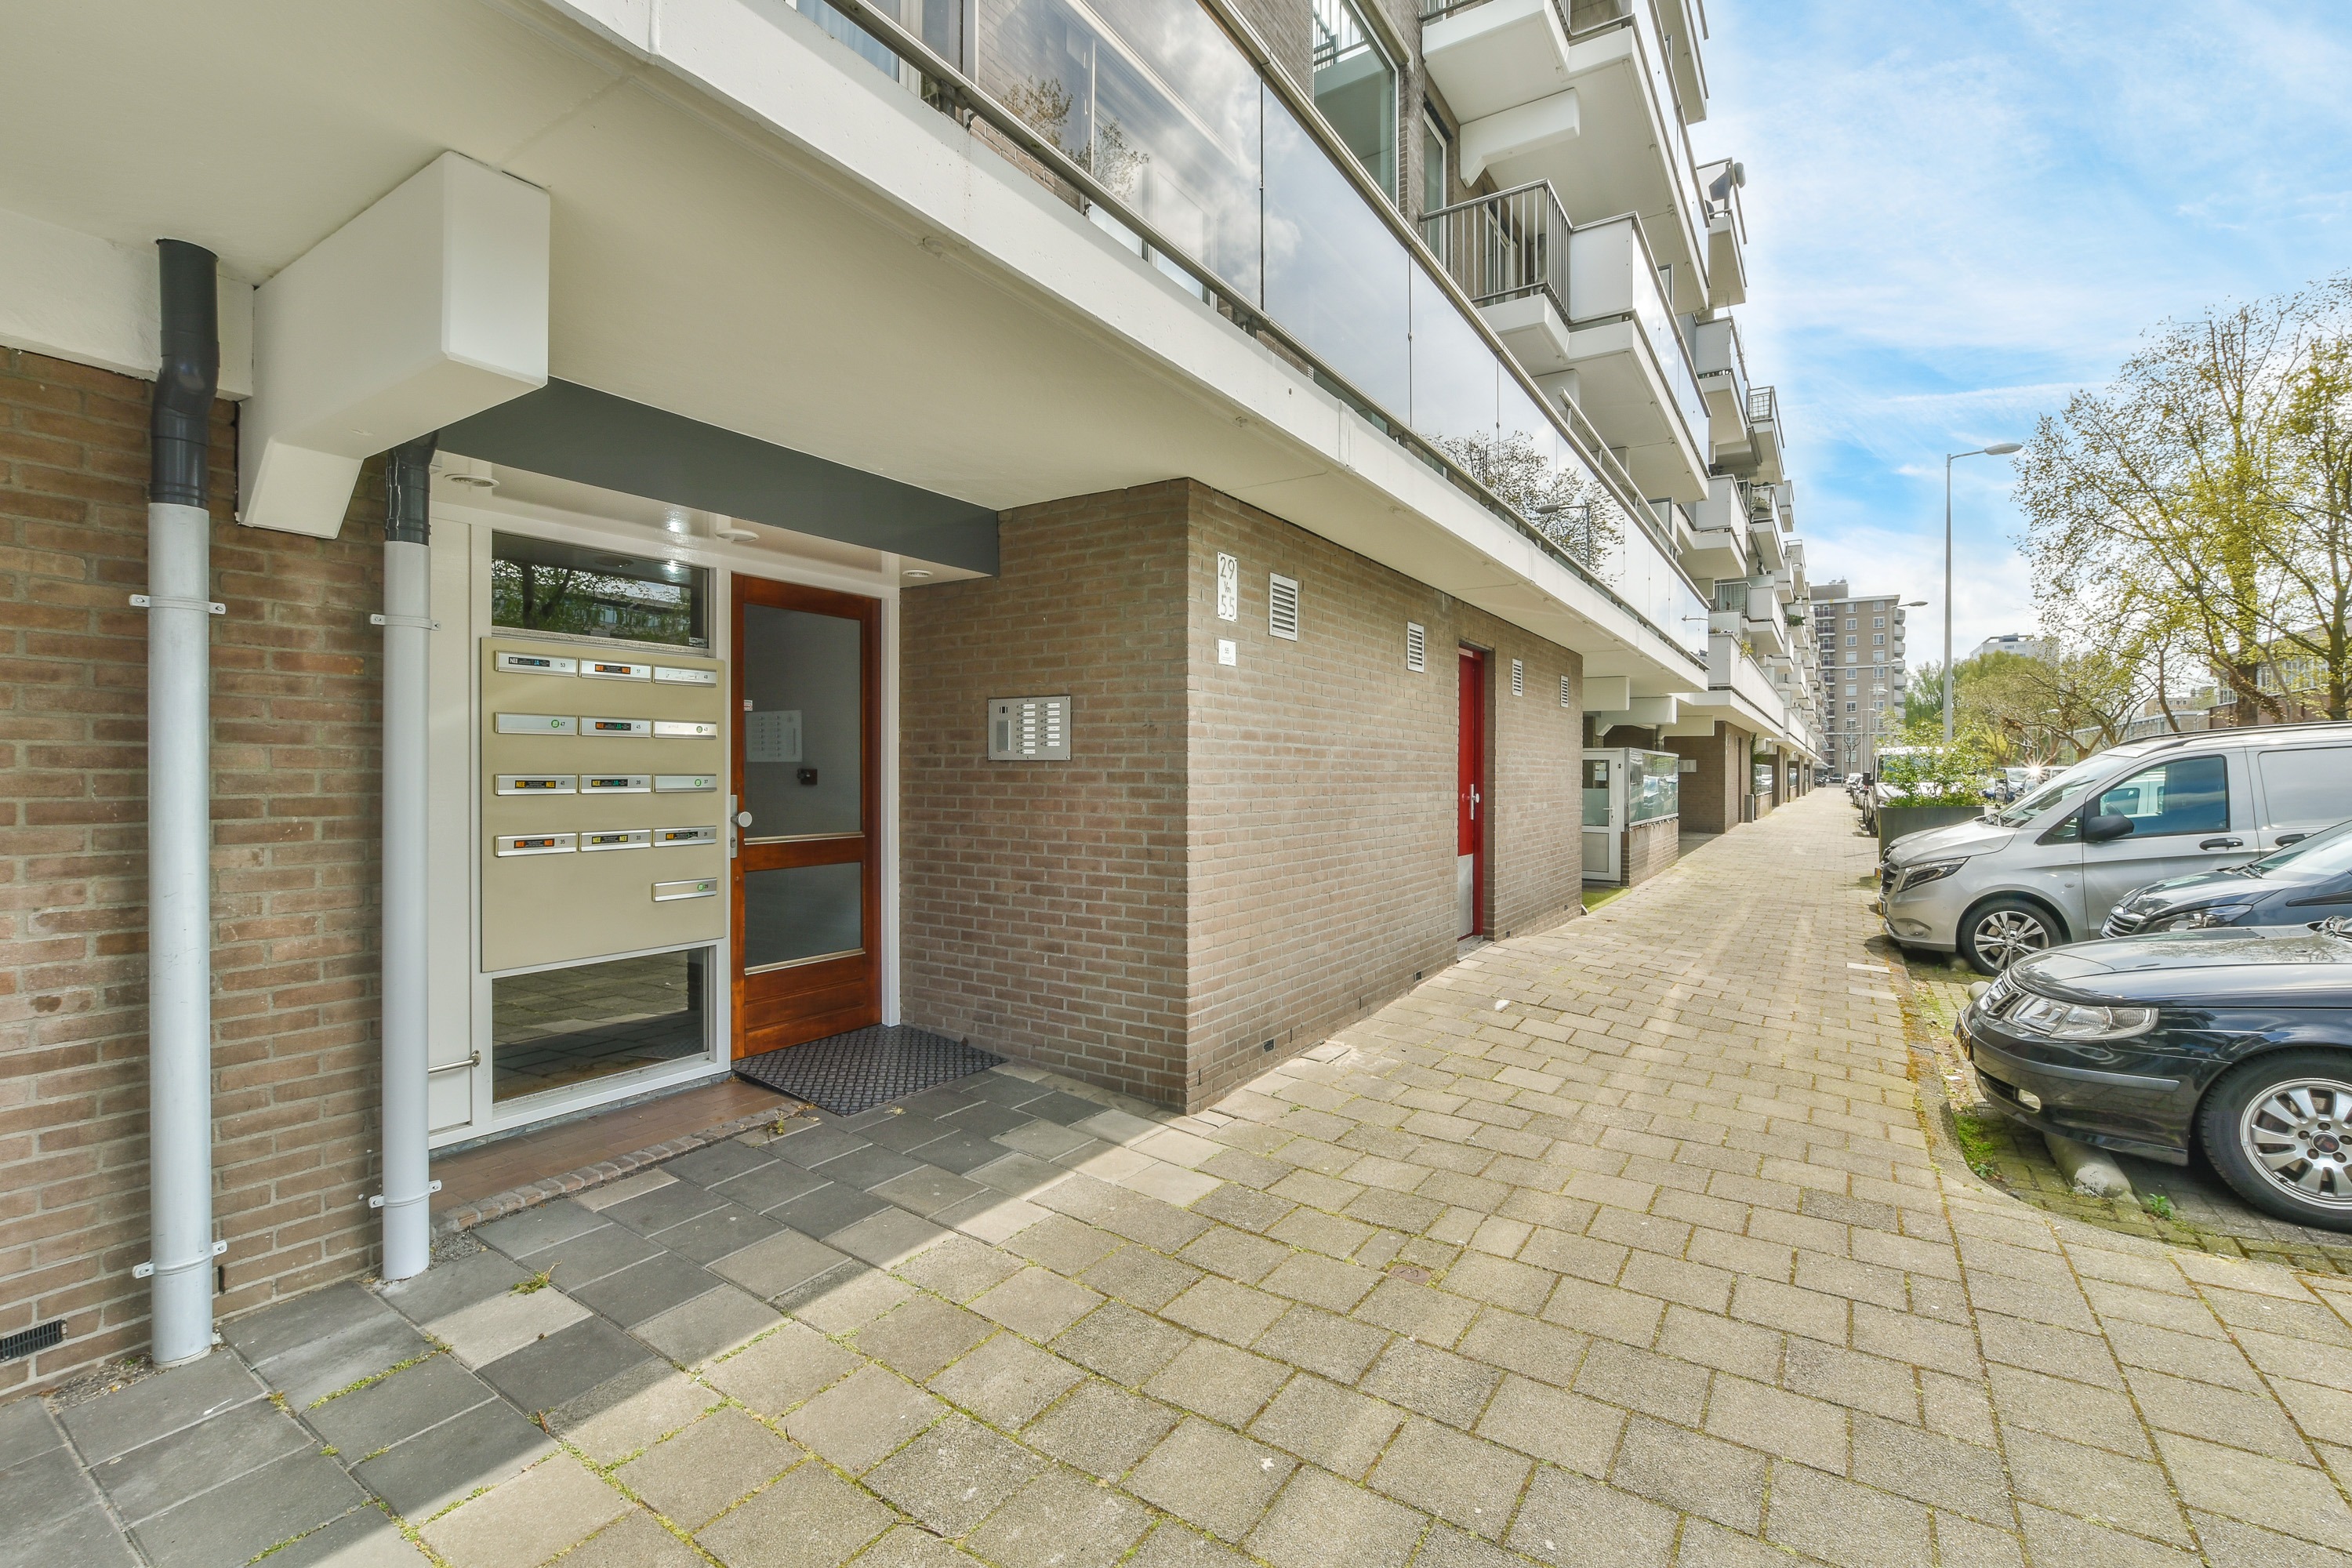 Woning / appartement - Amsterdam - Geervliet 39 